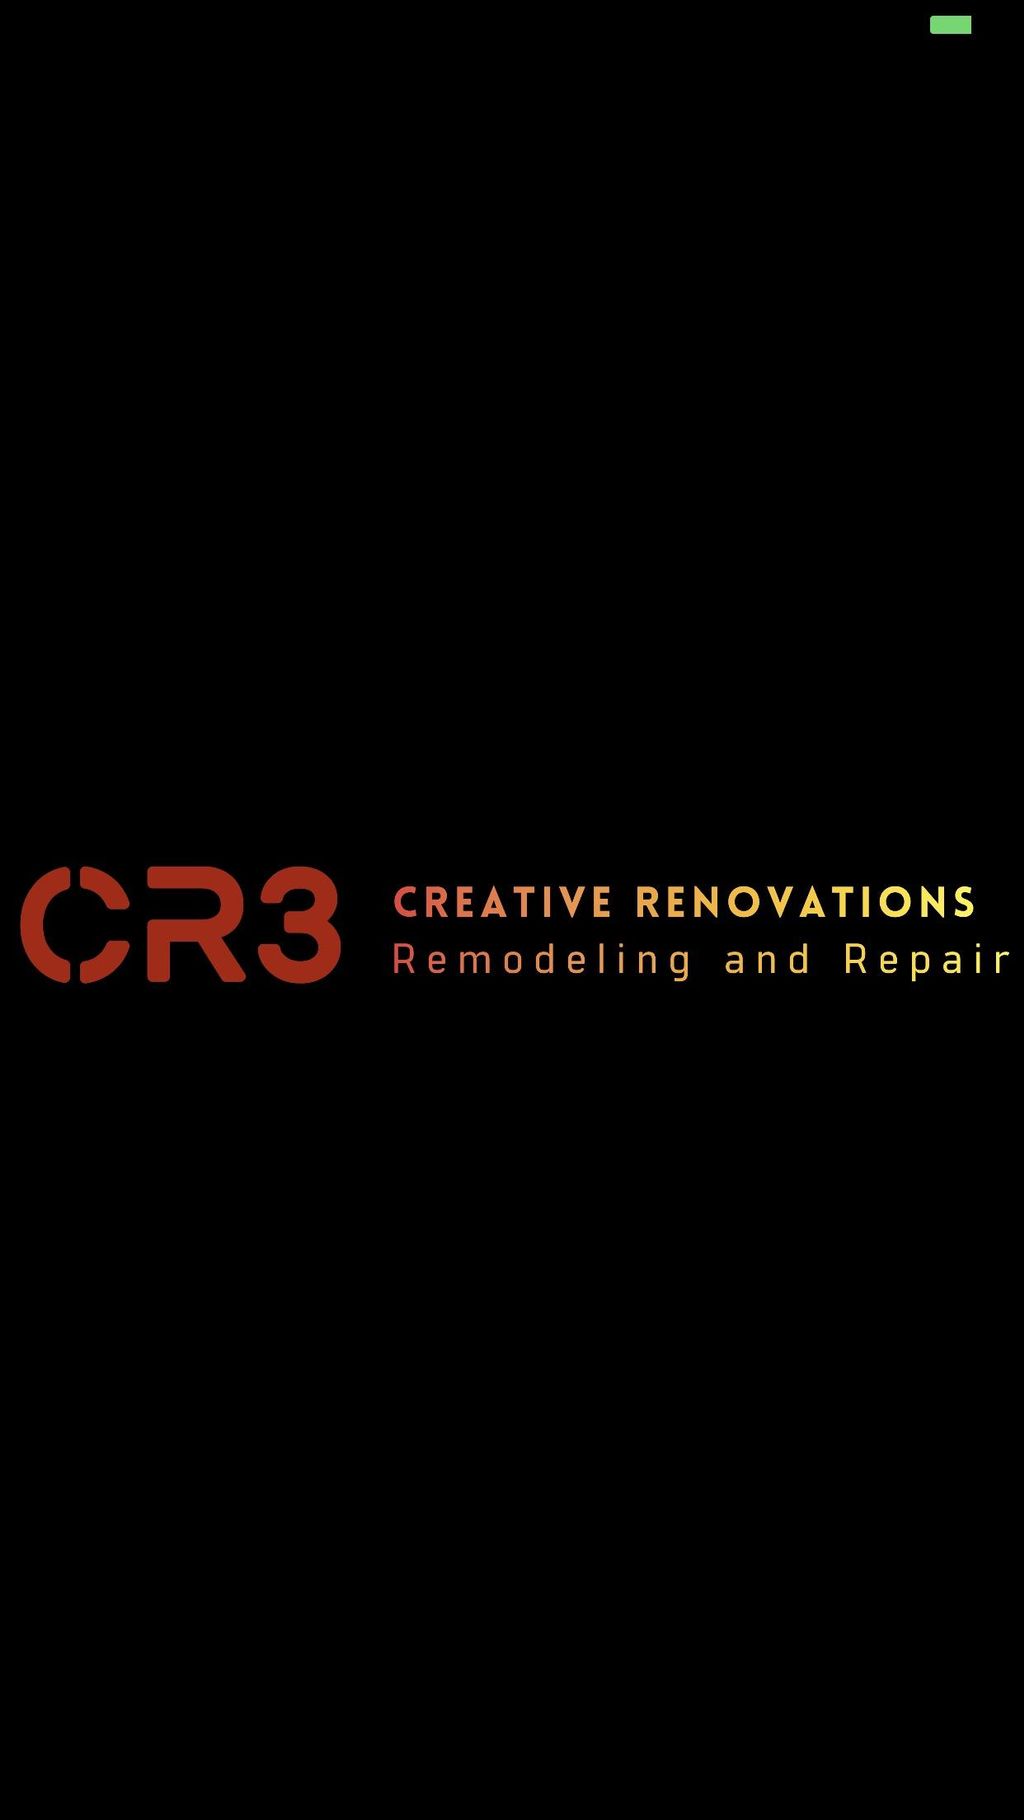 Creative Renovations, Remodeling And Repair